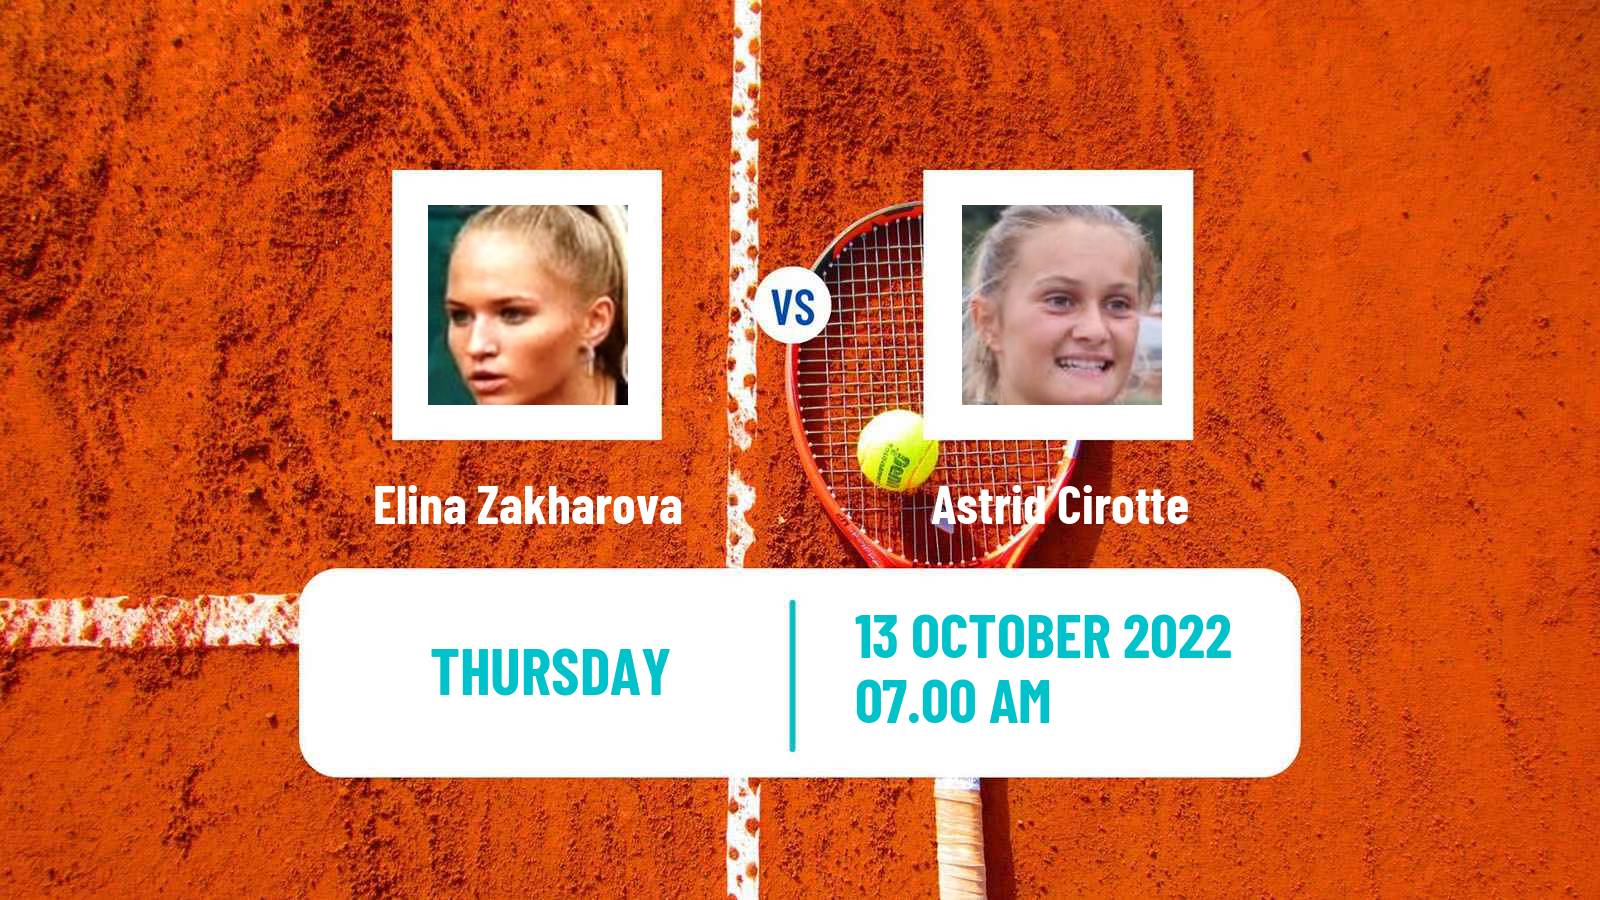 Tennis ITF Tournaments Elina Zakharova - Astrid Cirotte